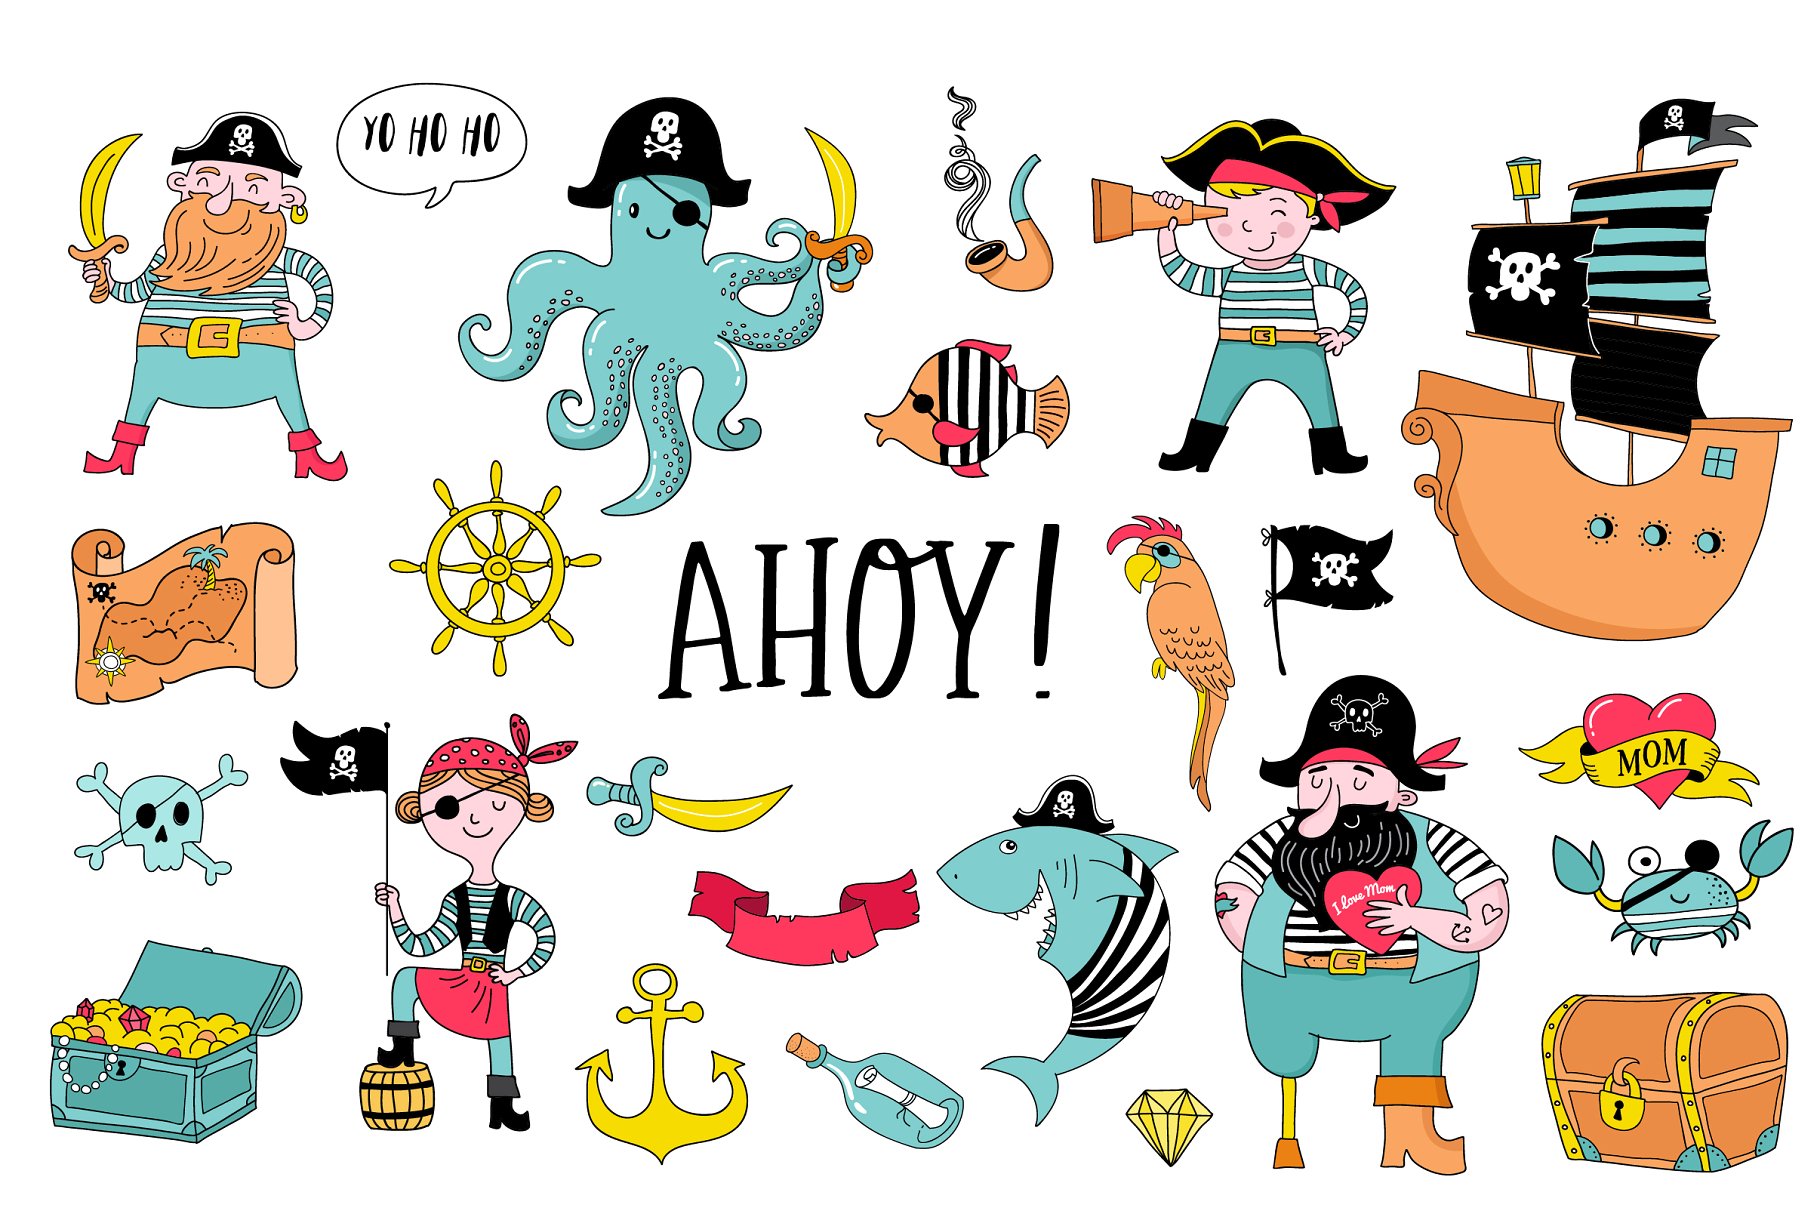 海盗船系列马克笔手绘卡通插画 Ahoy! Pirate collection插图4